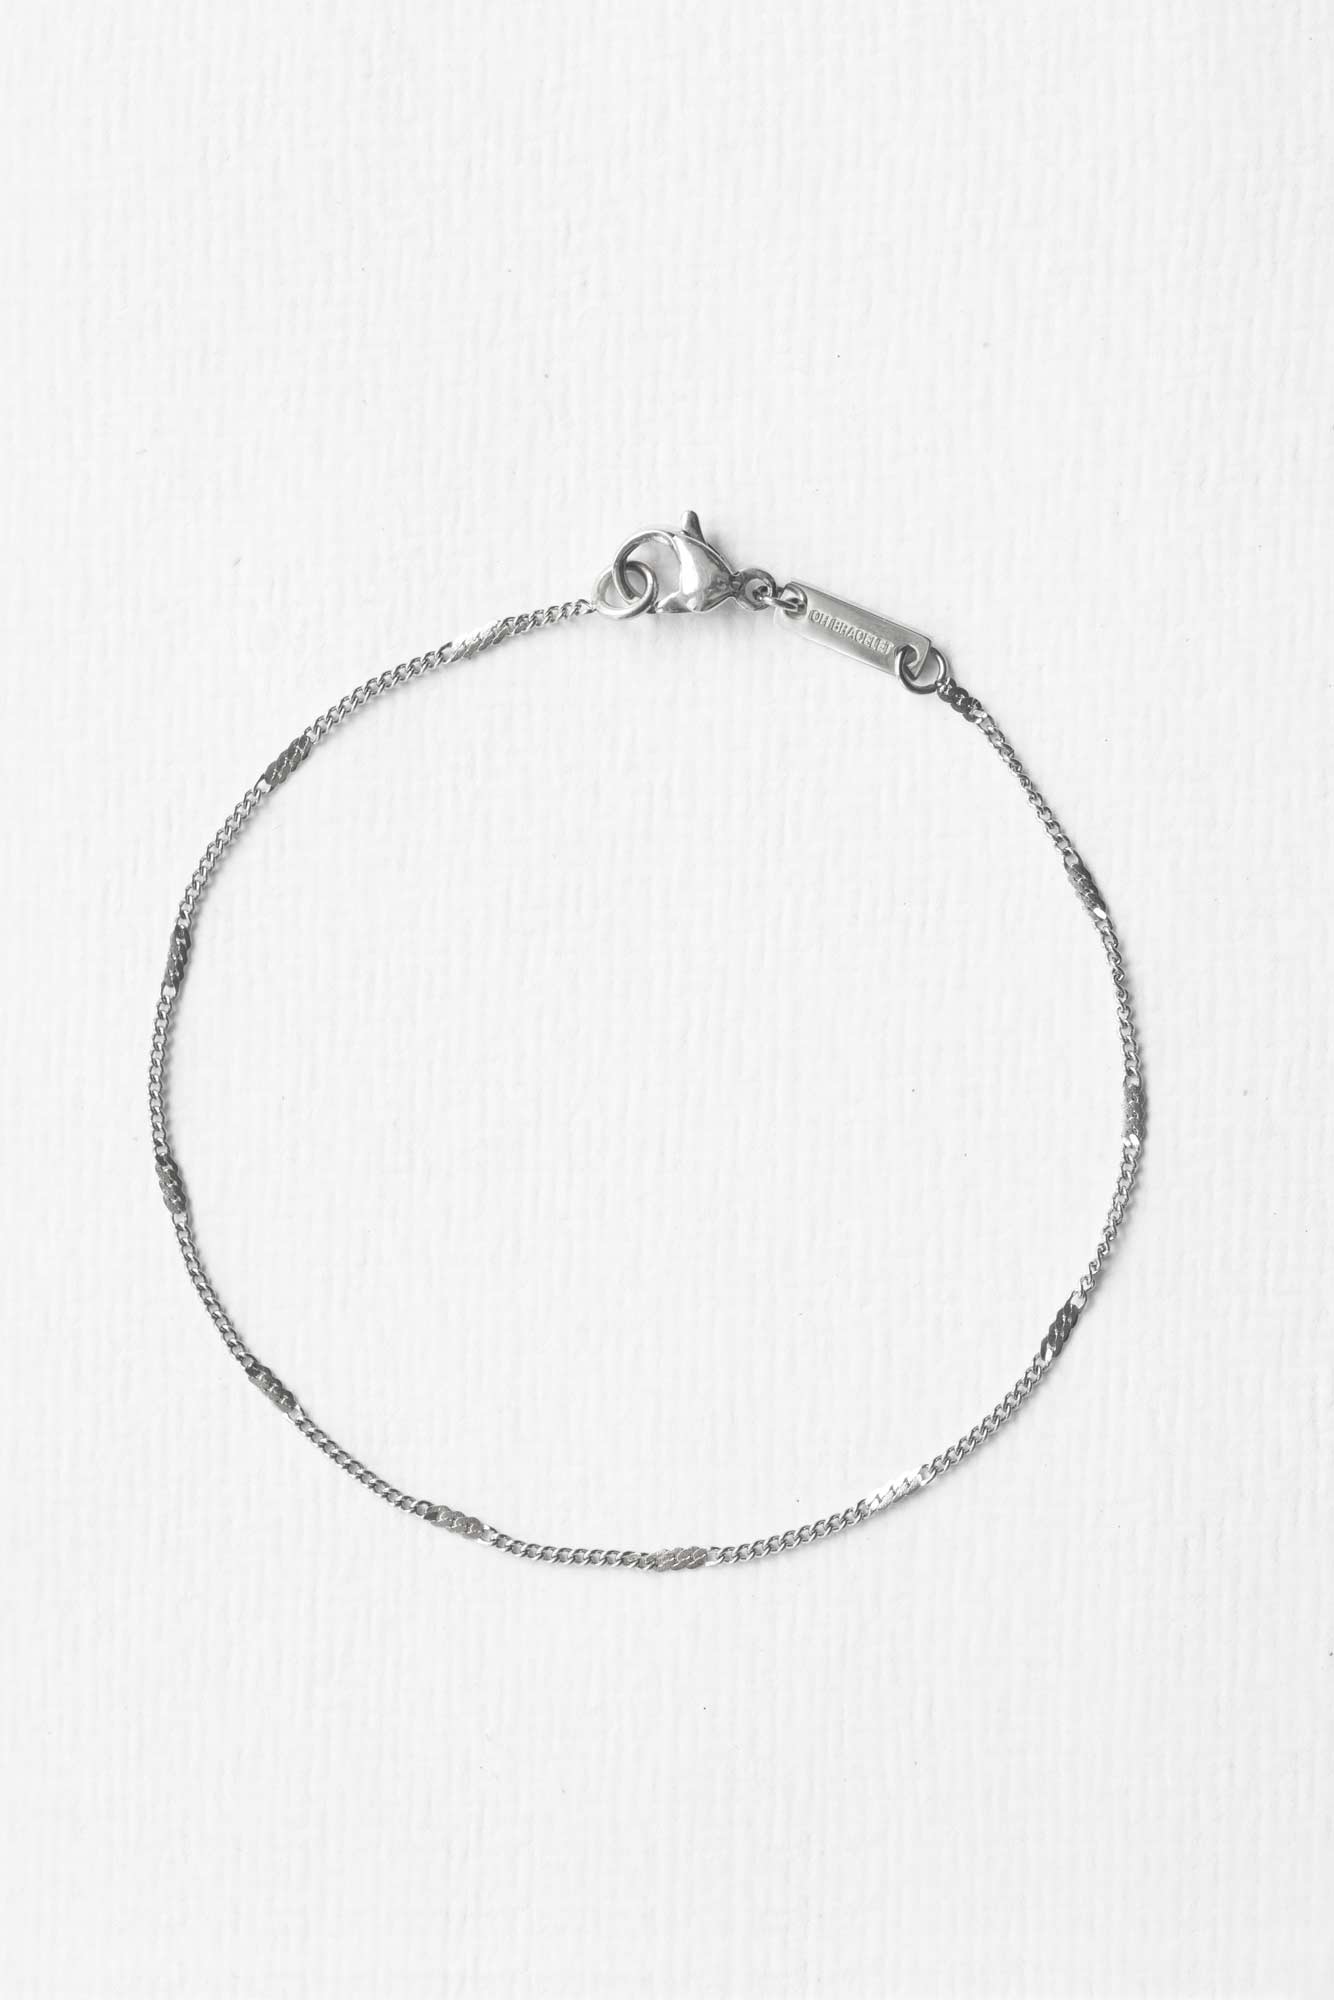 Filigranes hochwertiges Armband in Silber von Oh Bracelet Berlin bestehend aus recyceltem Edelstahl